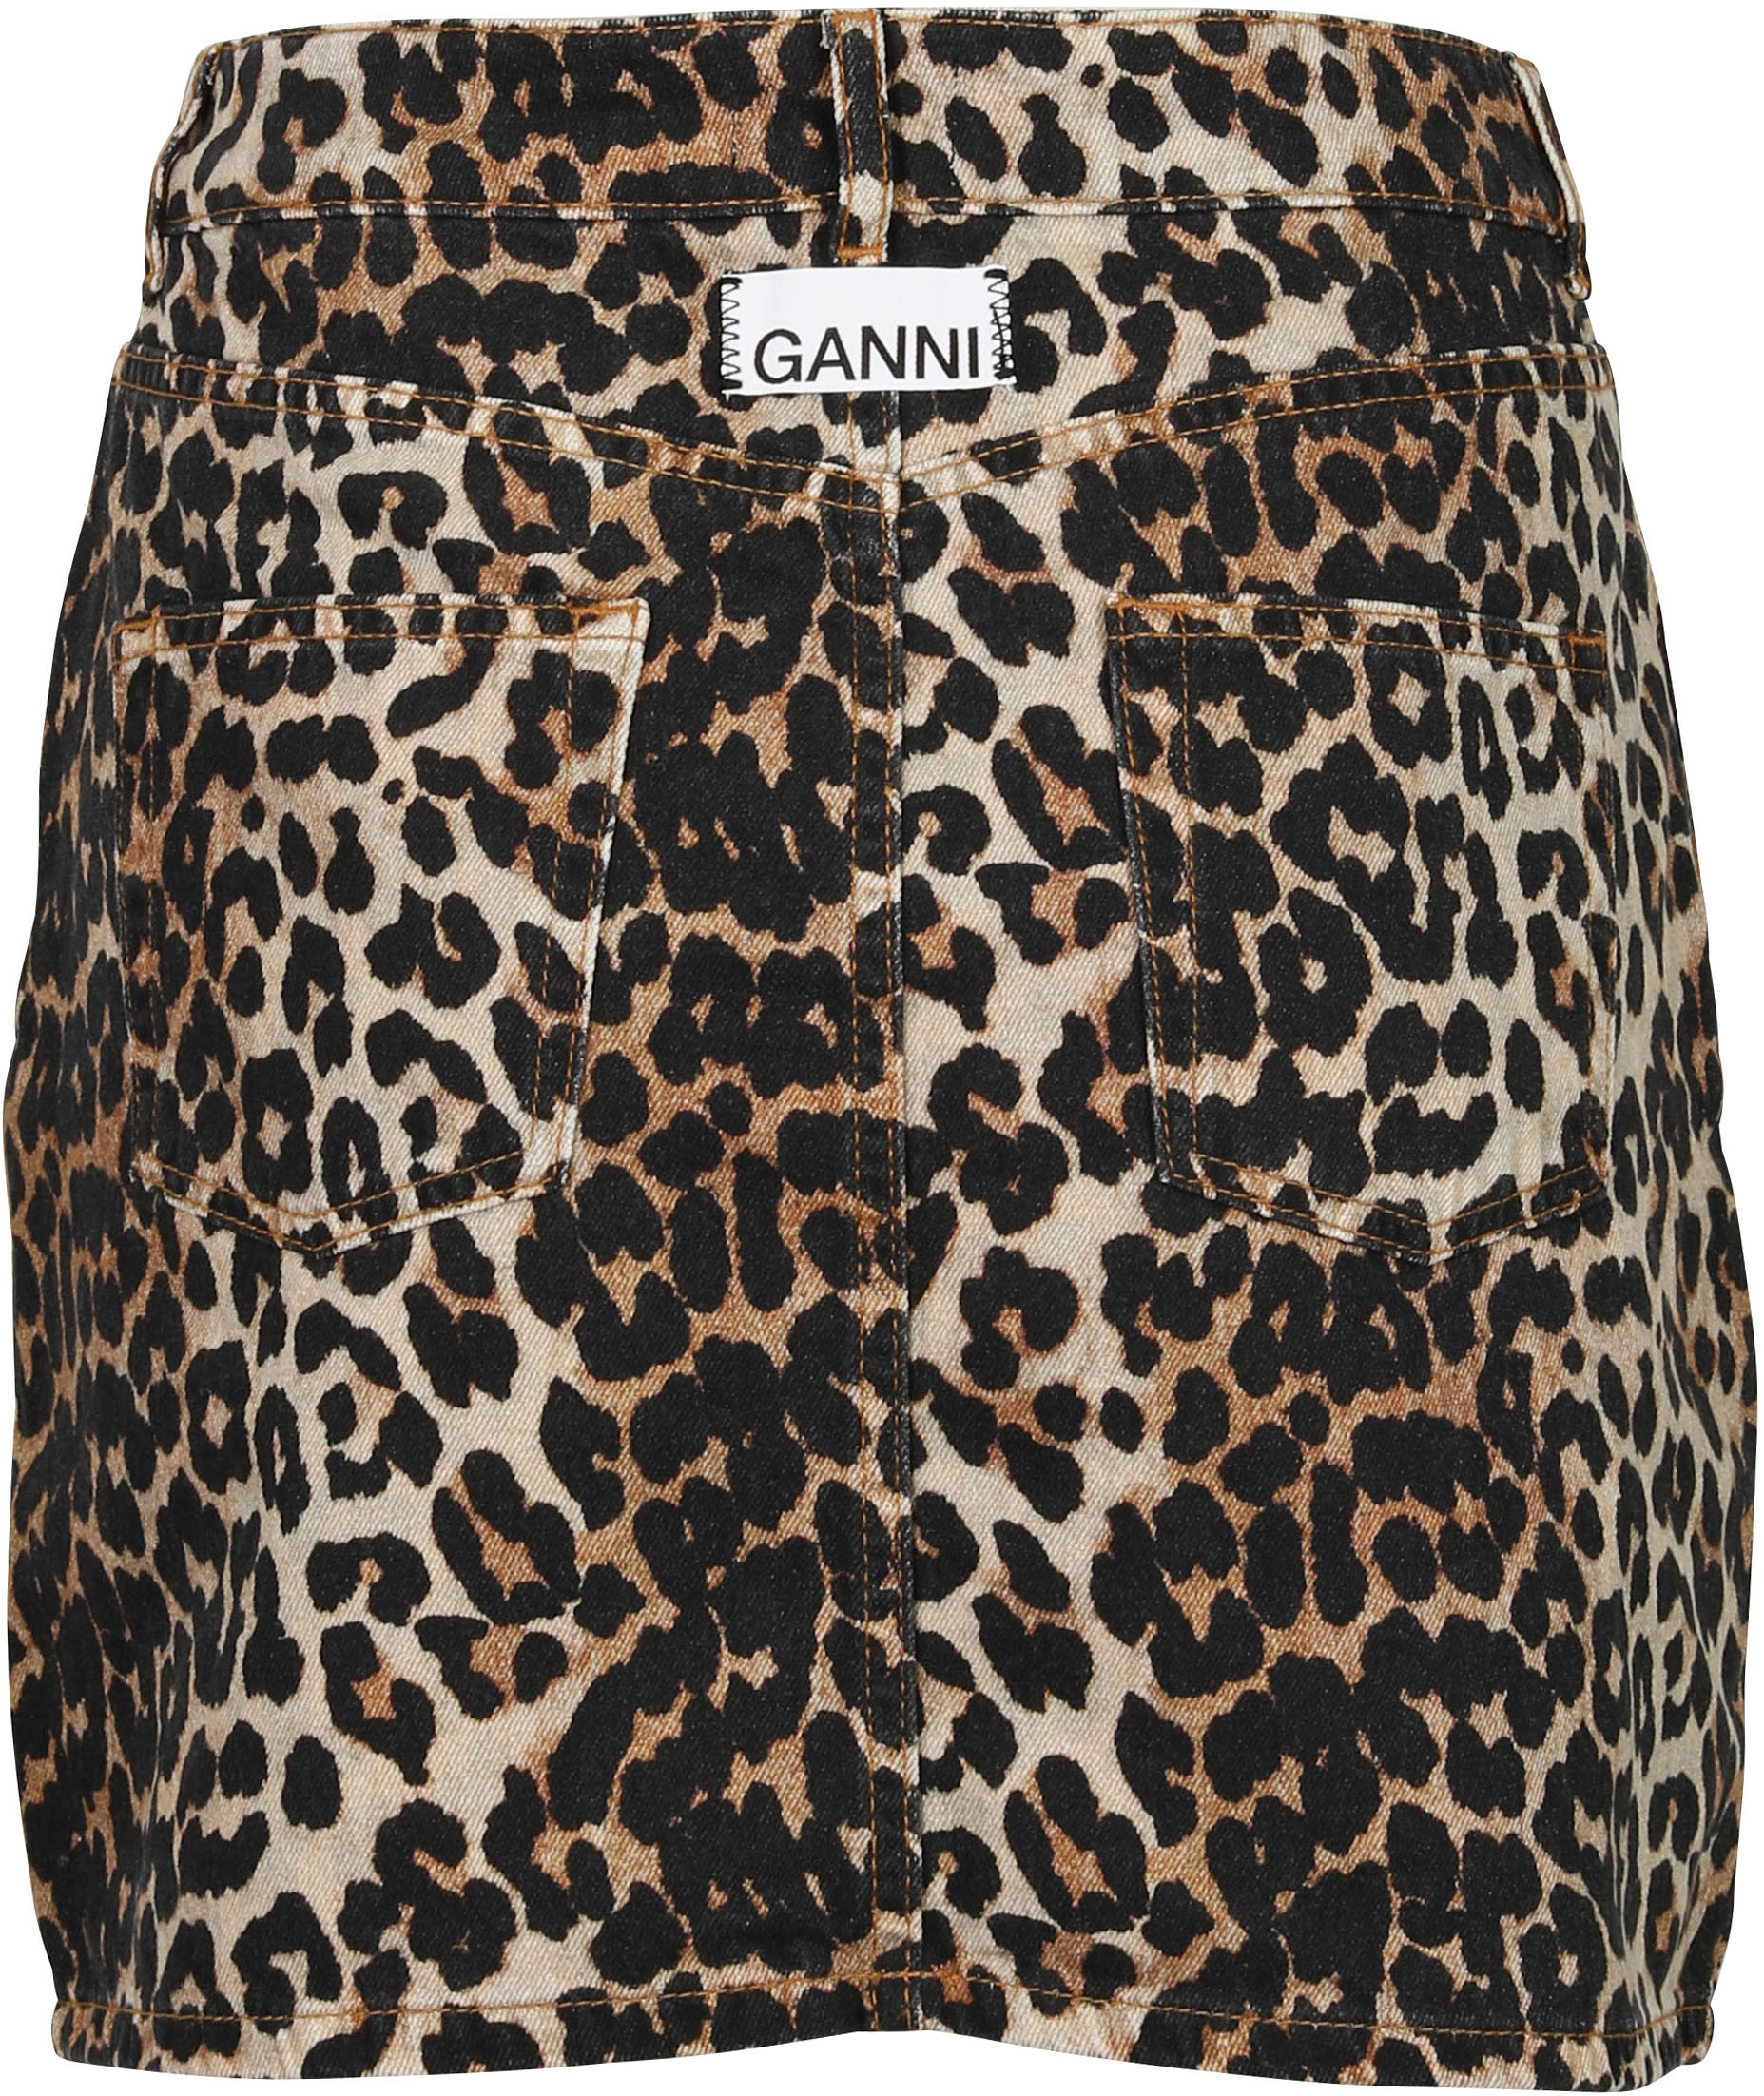 Ganni Denim Skirt Leopard Print 38